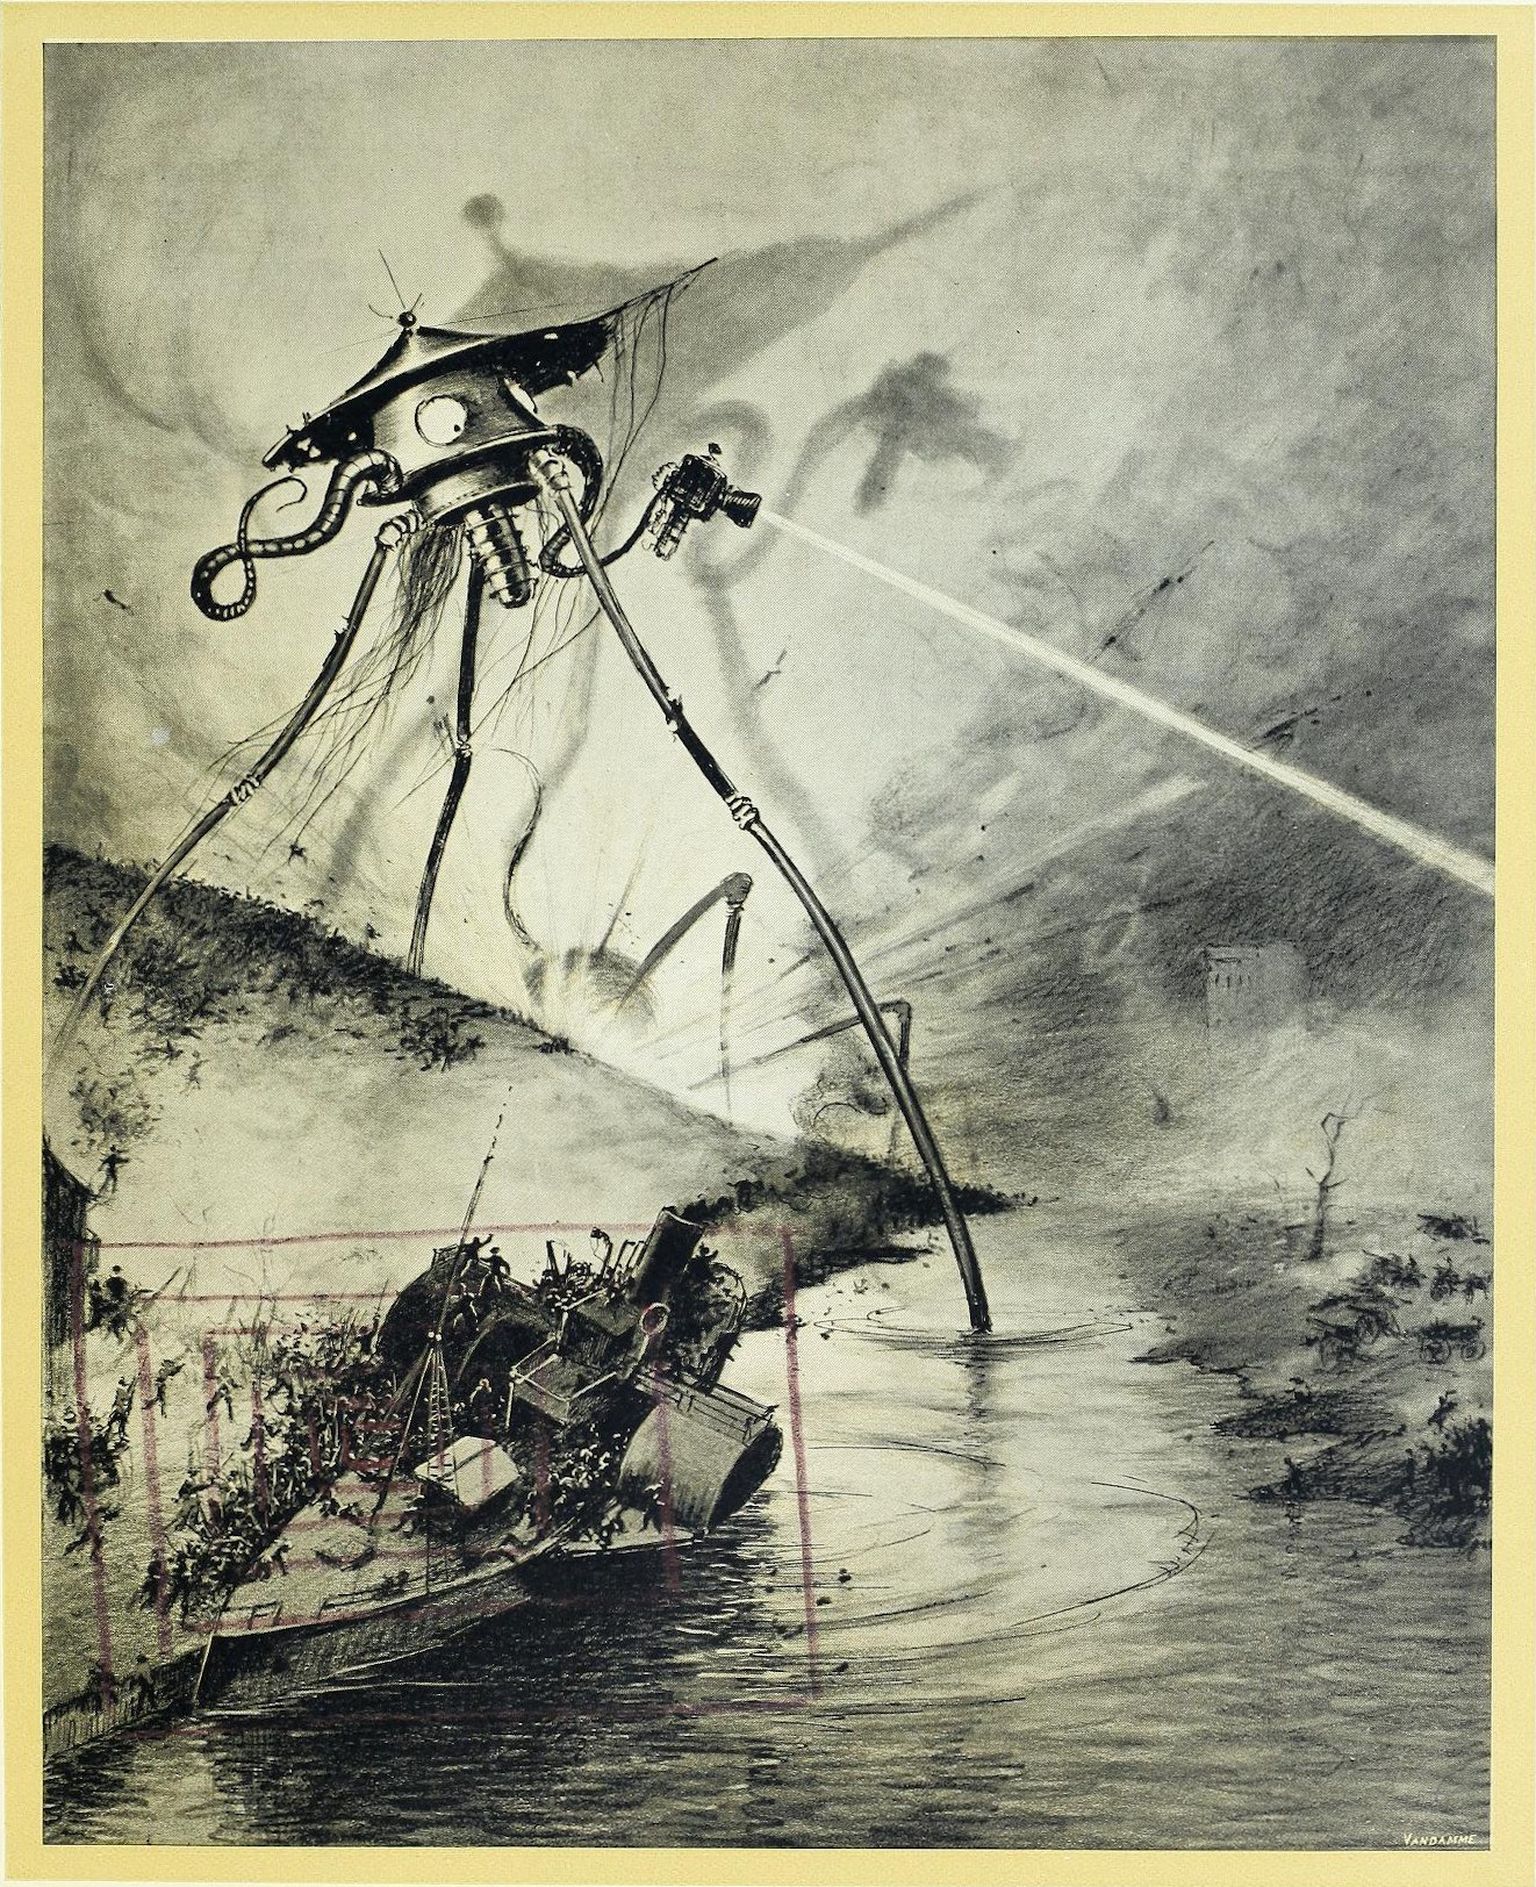 Brazīliešu mākslinieka Enriki Alvina Korrējas ilustrācija (1906) Herberta Velsa slavenajā grāmatā “Pasauļu karš” (1897). 